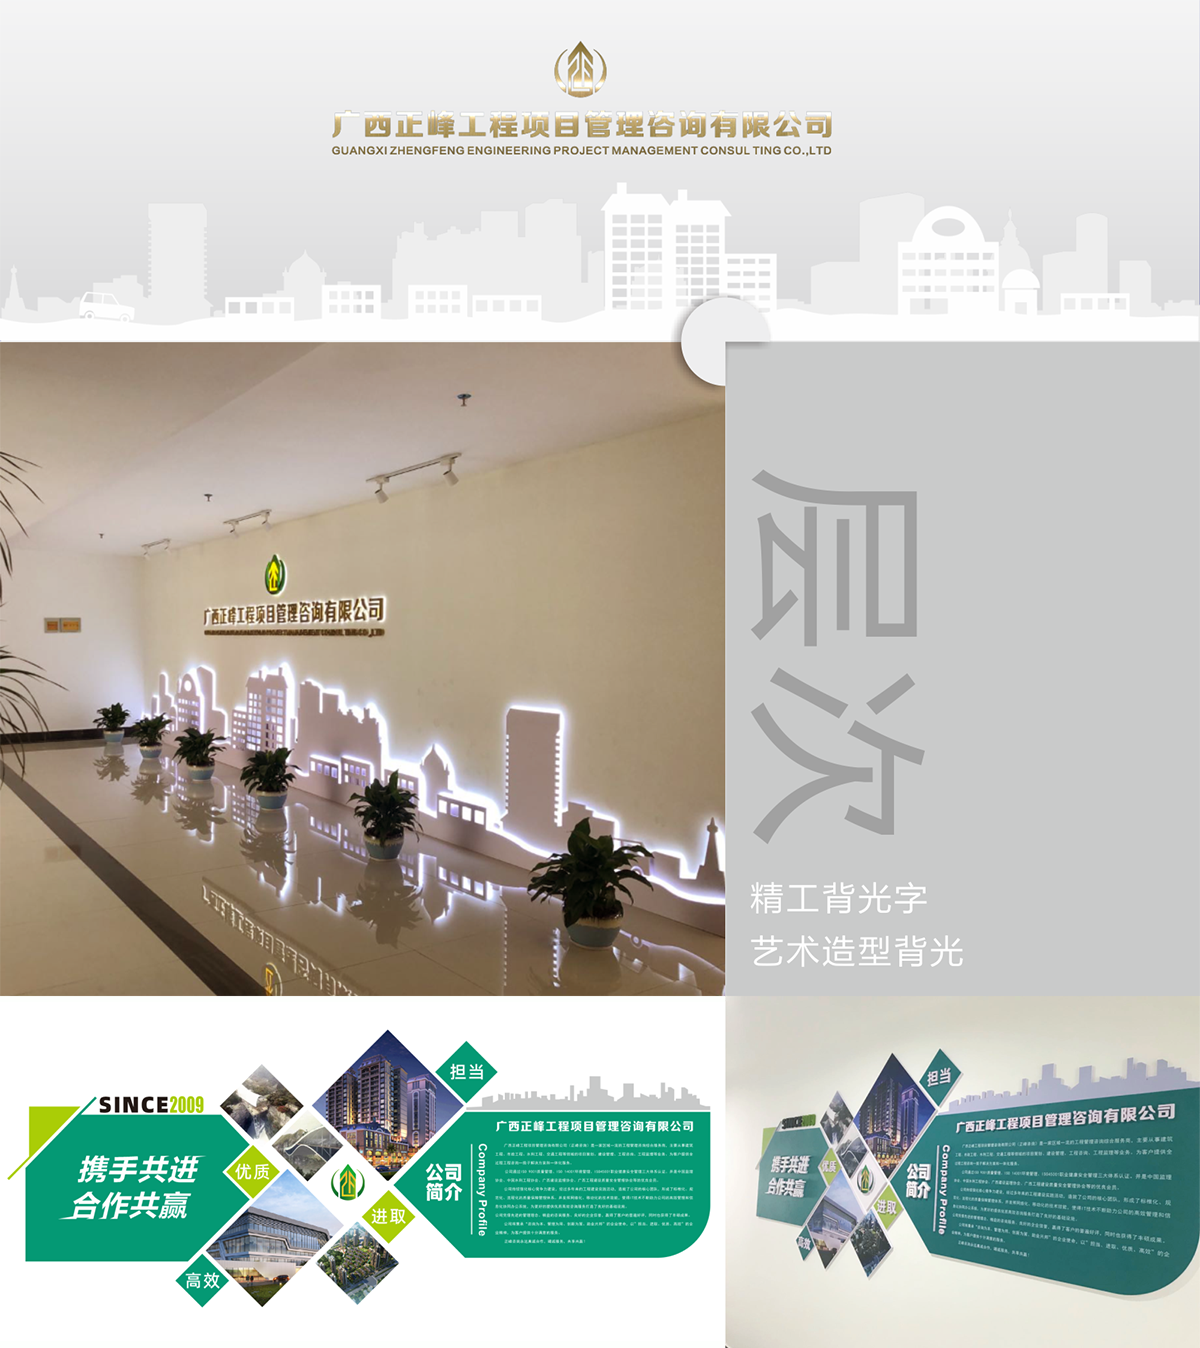 广西正峰工程项目管理咨询有限公司企业文化设计上墙_01.png